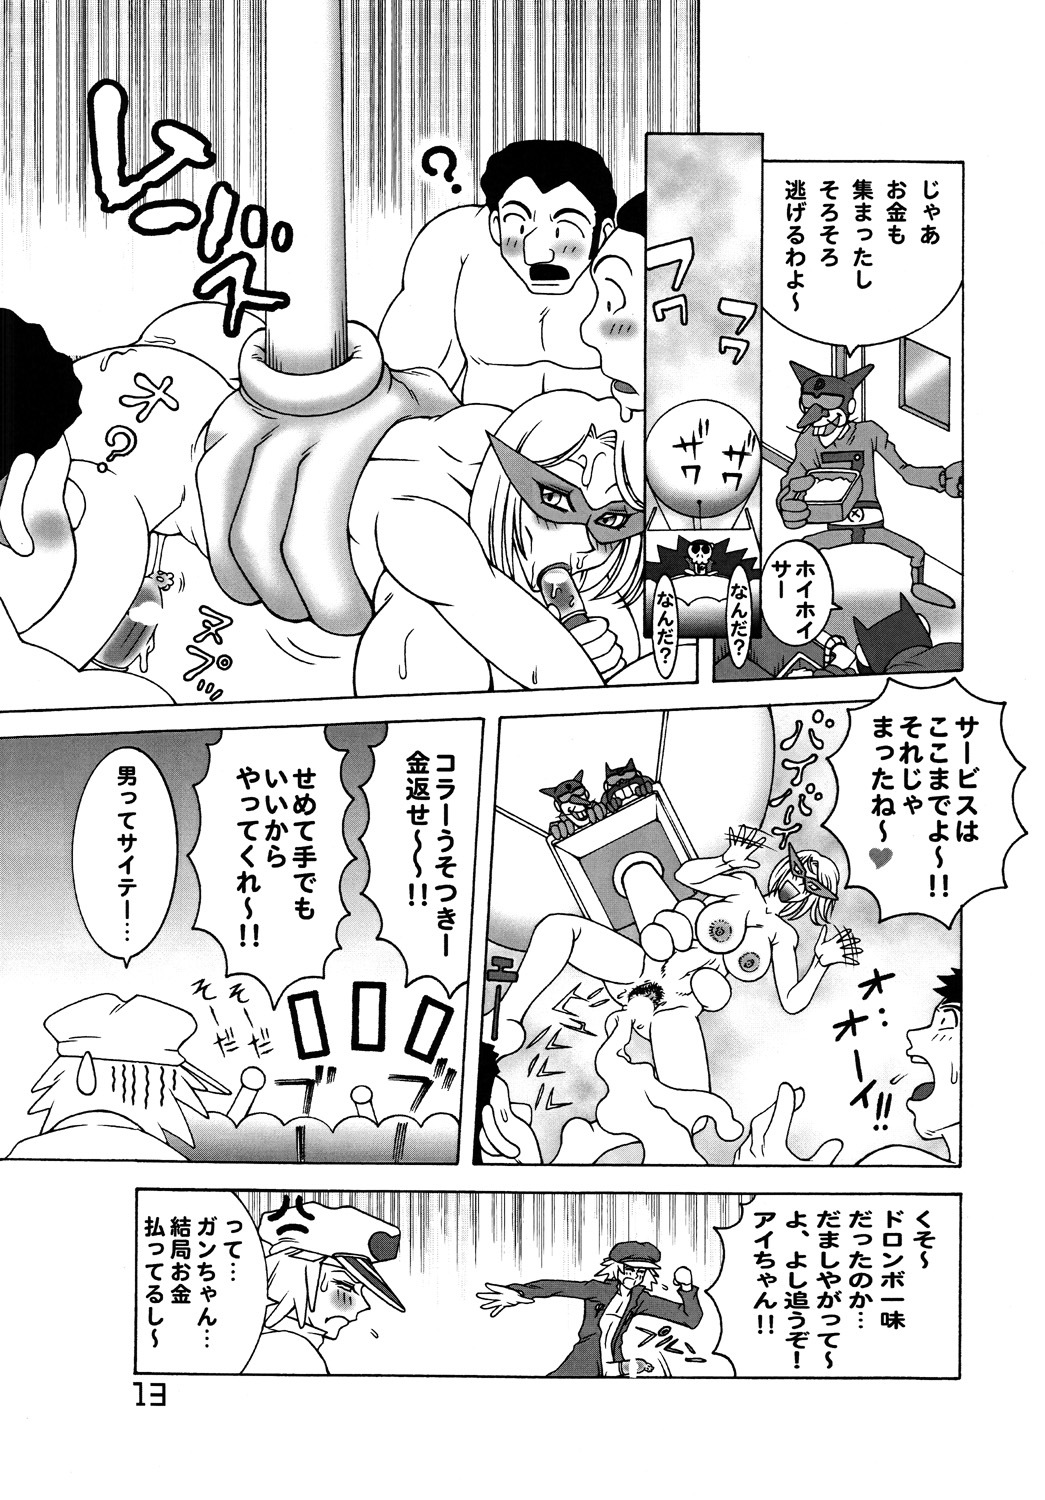 [DYNAMITE HONEY] Tatsunoko Dynamite page 12 full